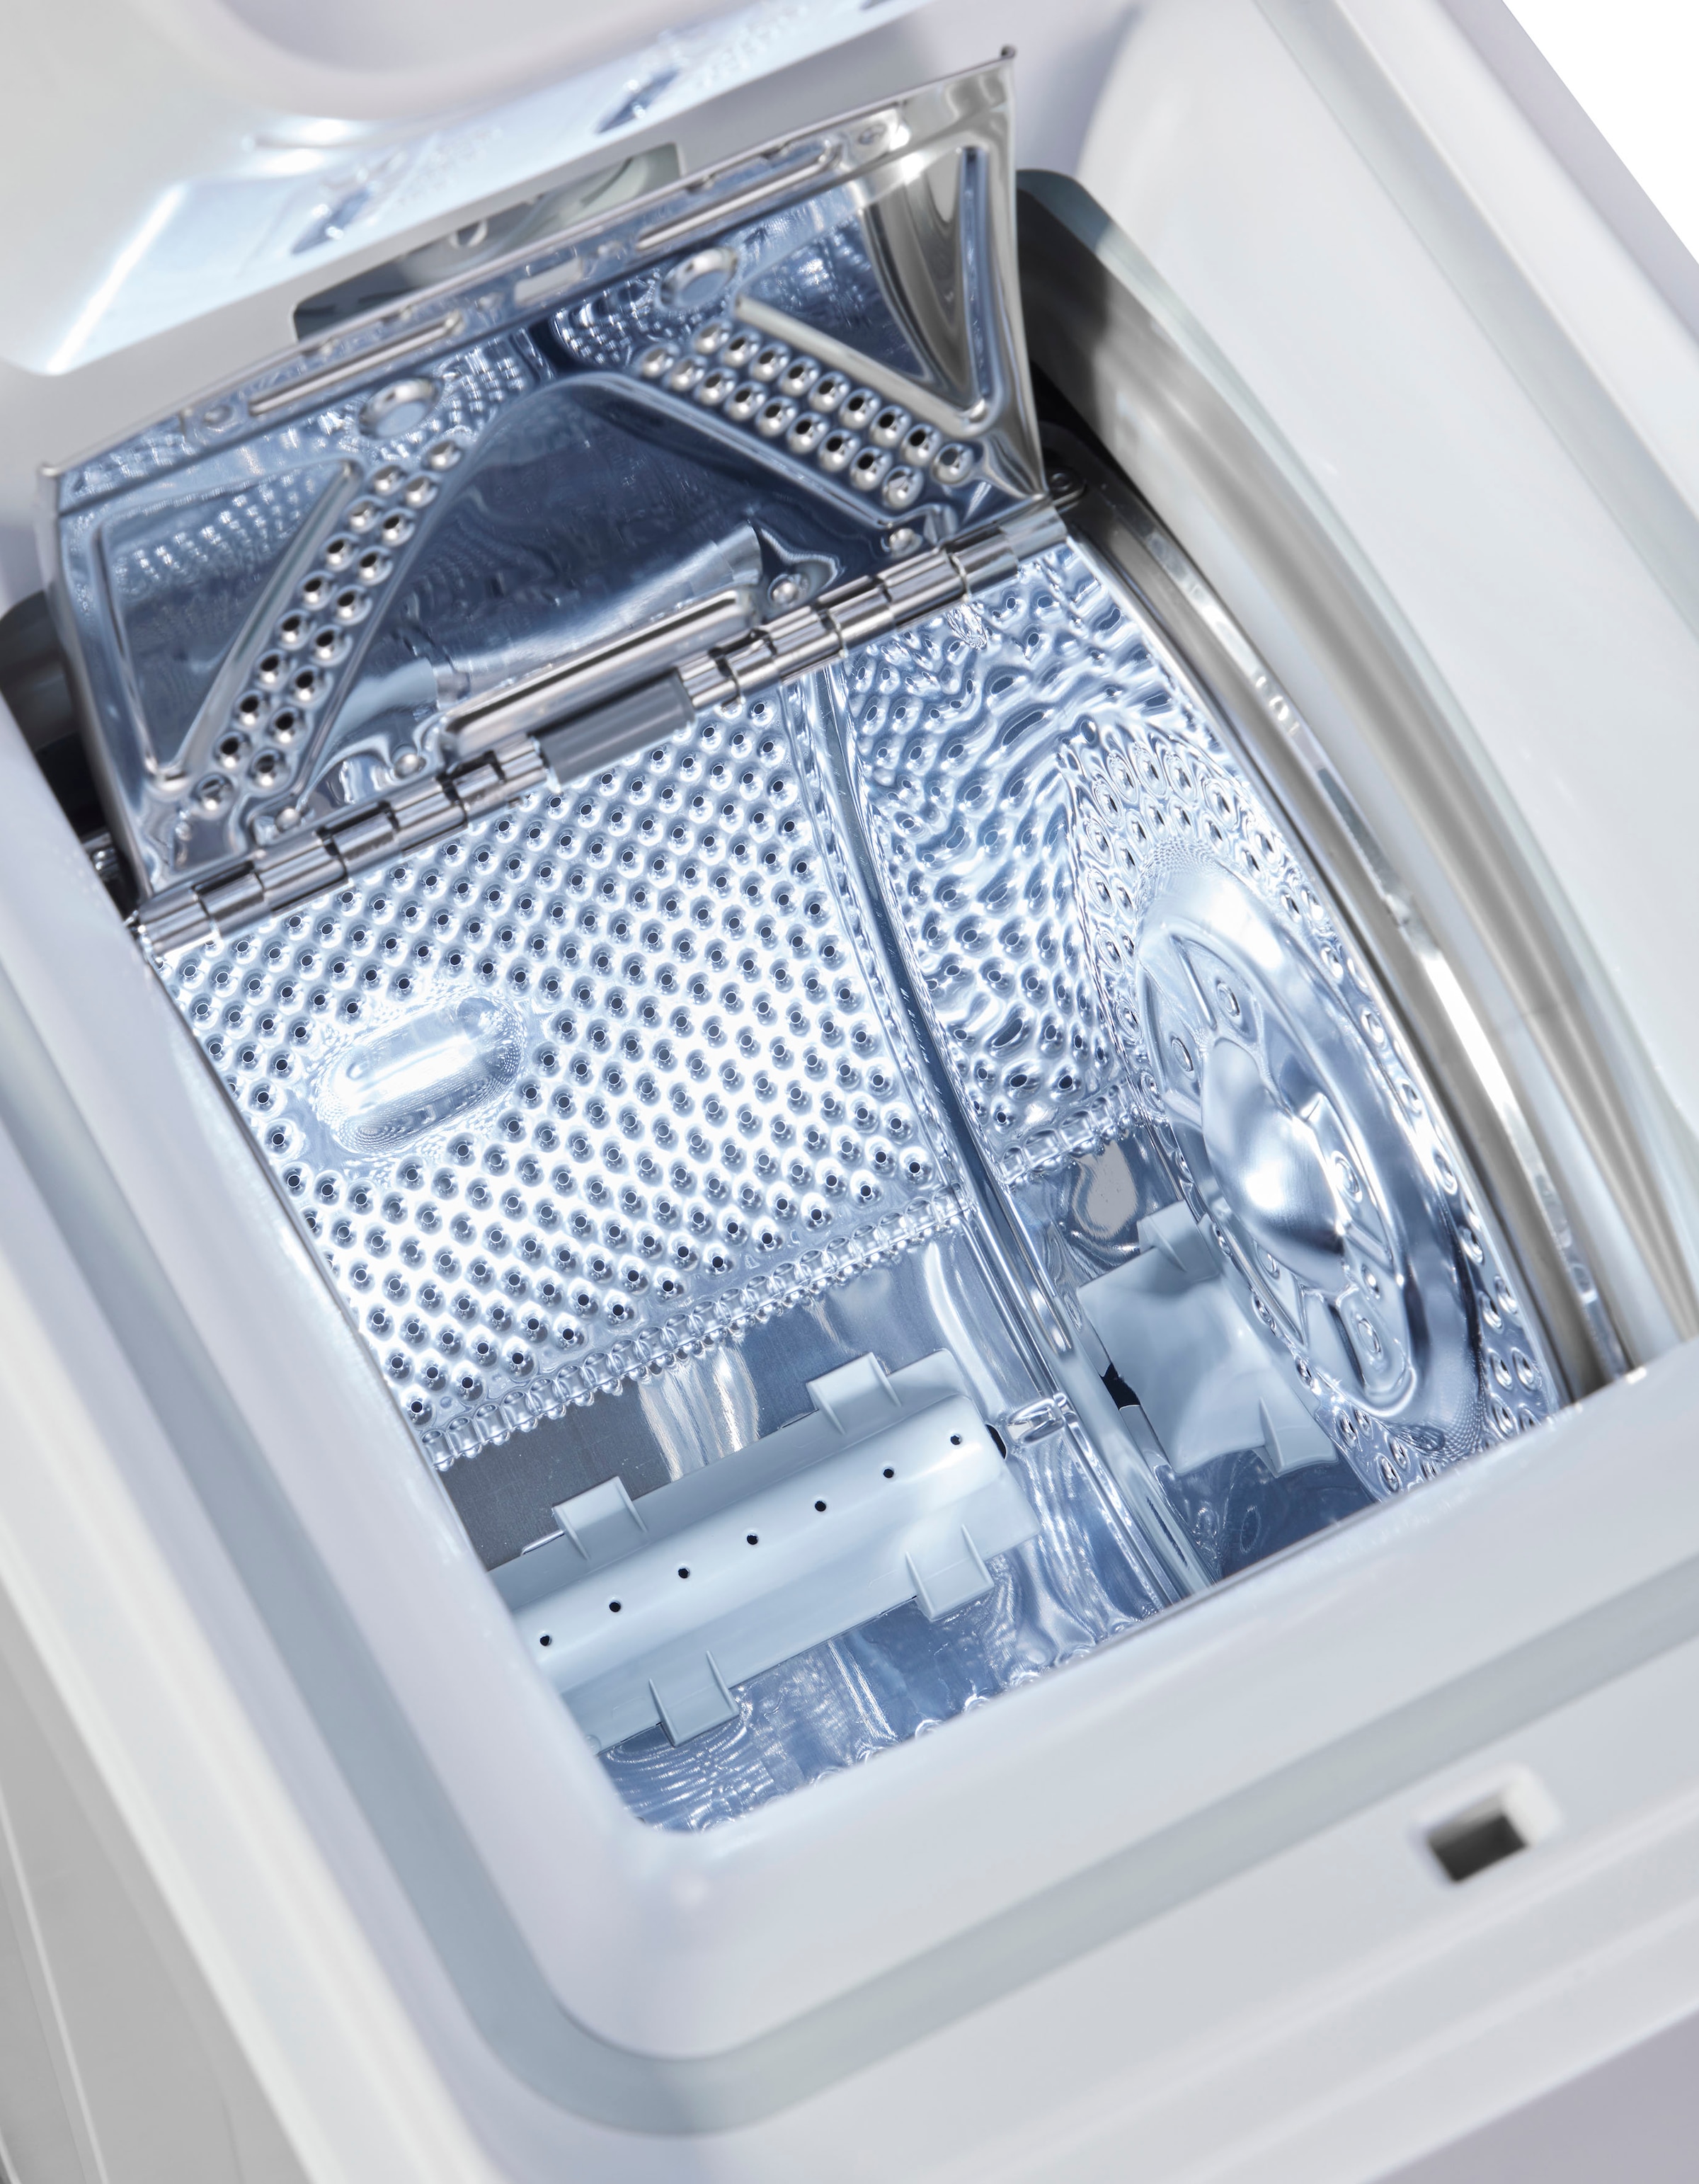 BAUKNECHT Waschmaschine Toplader »WMT 6513 B5«, WMT 6513 B5, 6 kg, 1200 U/min